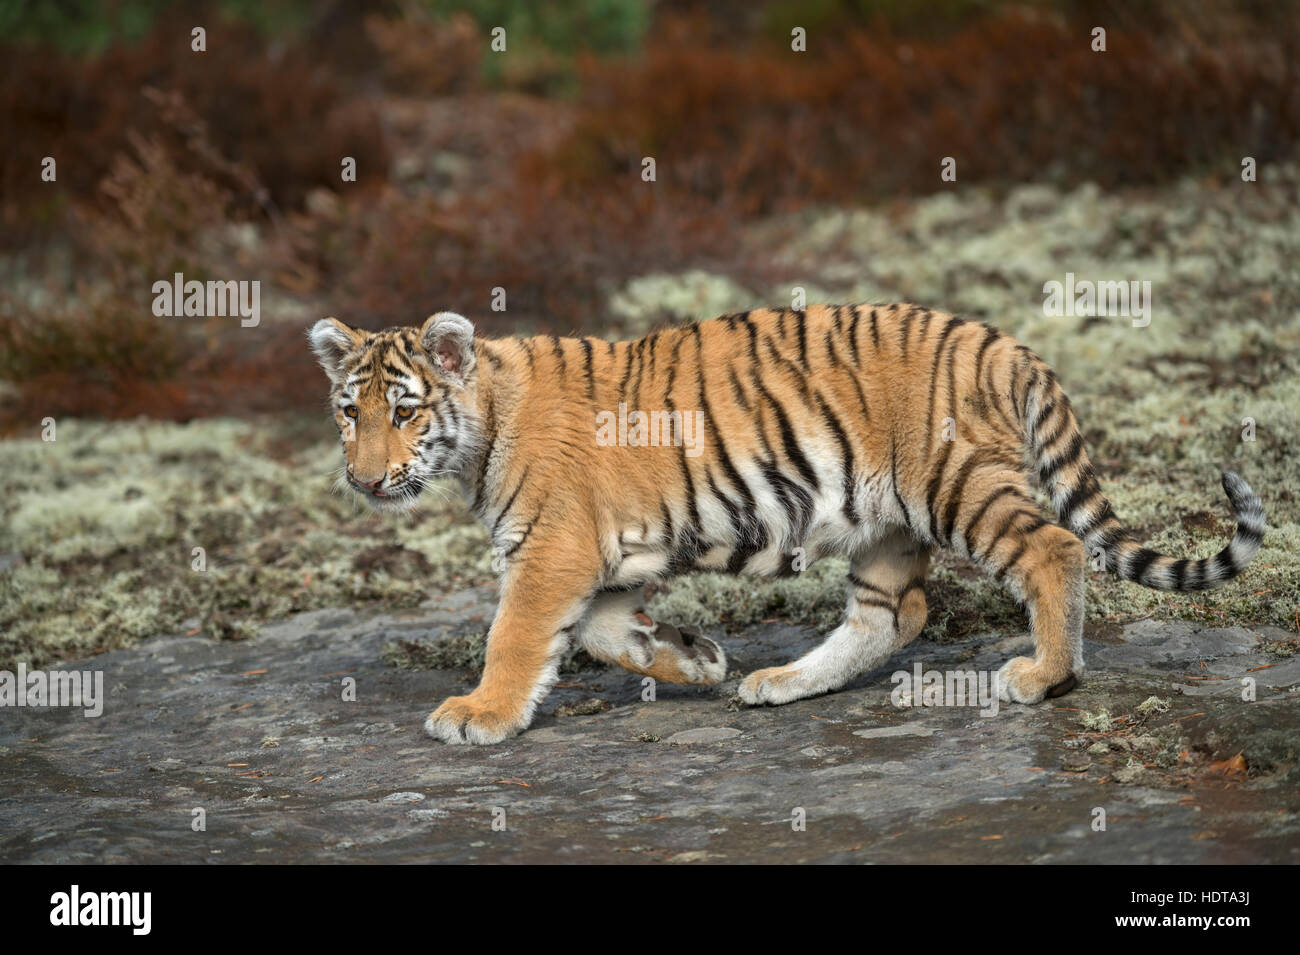 Royal Bengal Tiger / Koenigstiger (Panthera Tigris), zu Fuß über die Felsen, aufmerksam beobachten, Ganzkörper-Seitenansicht, junges Tier, weiches Licht. Stockfoto